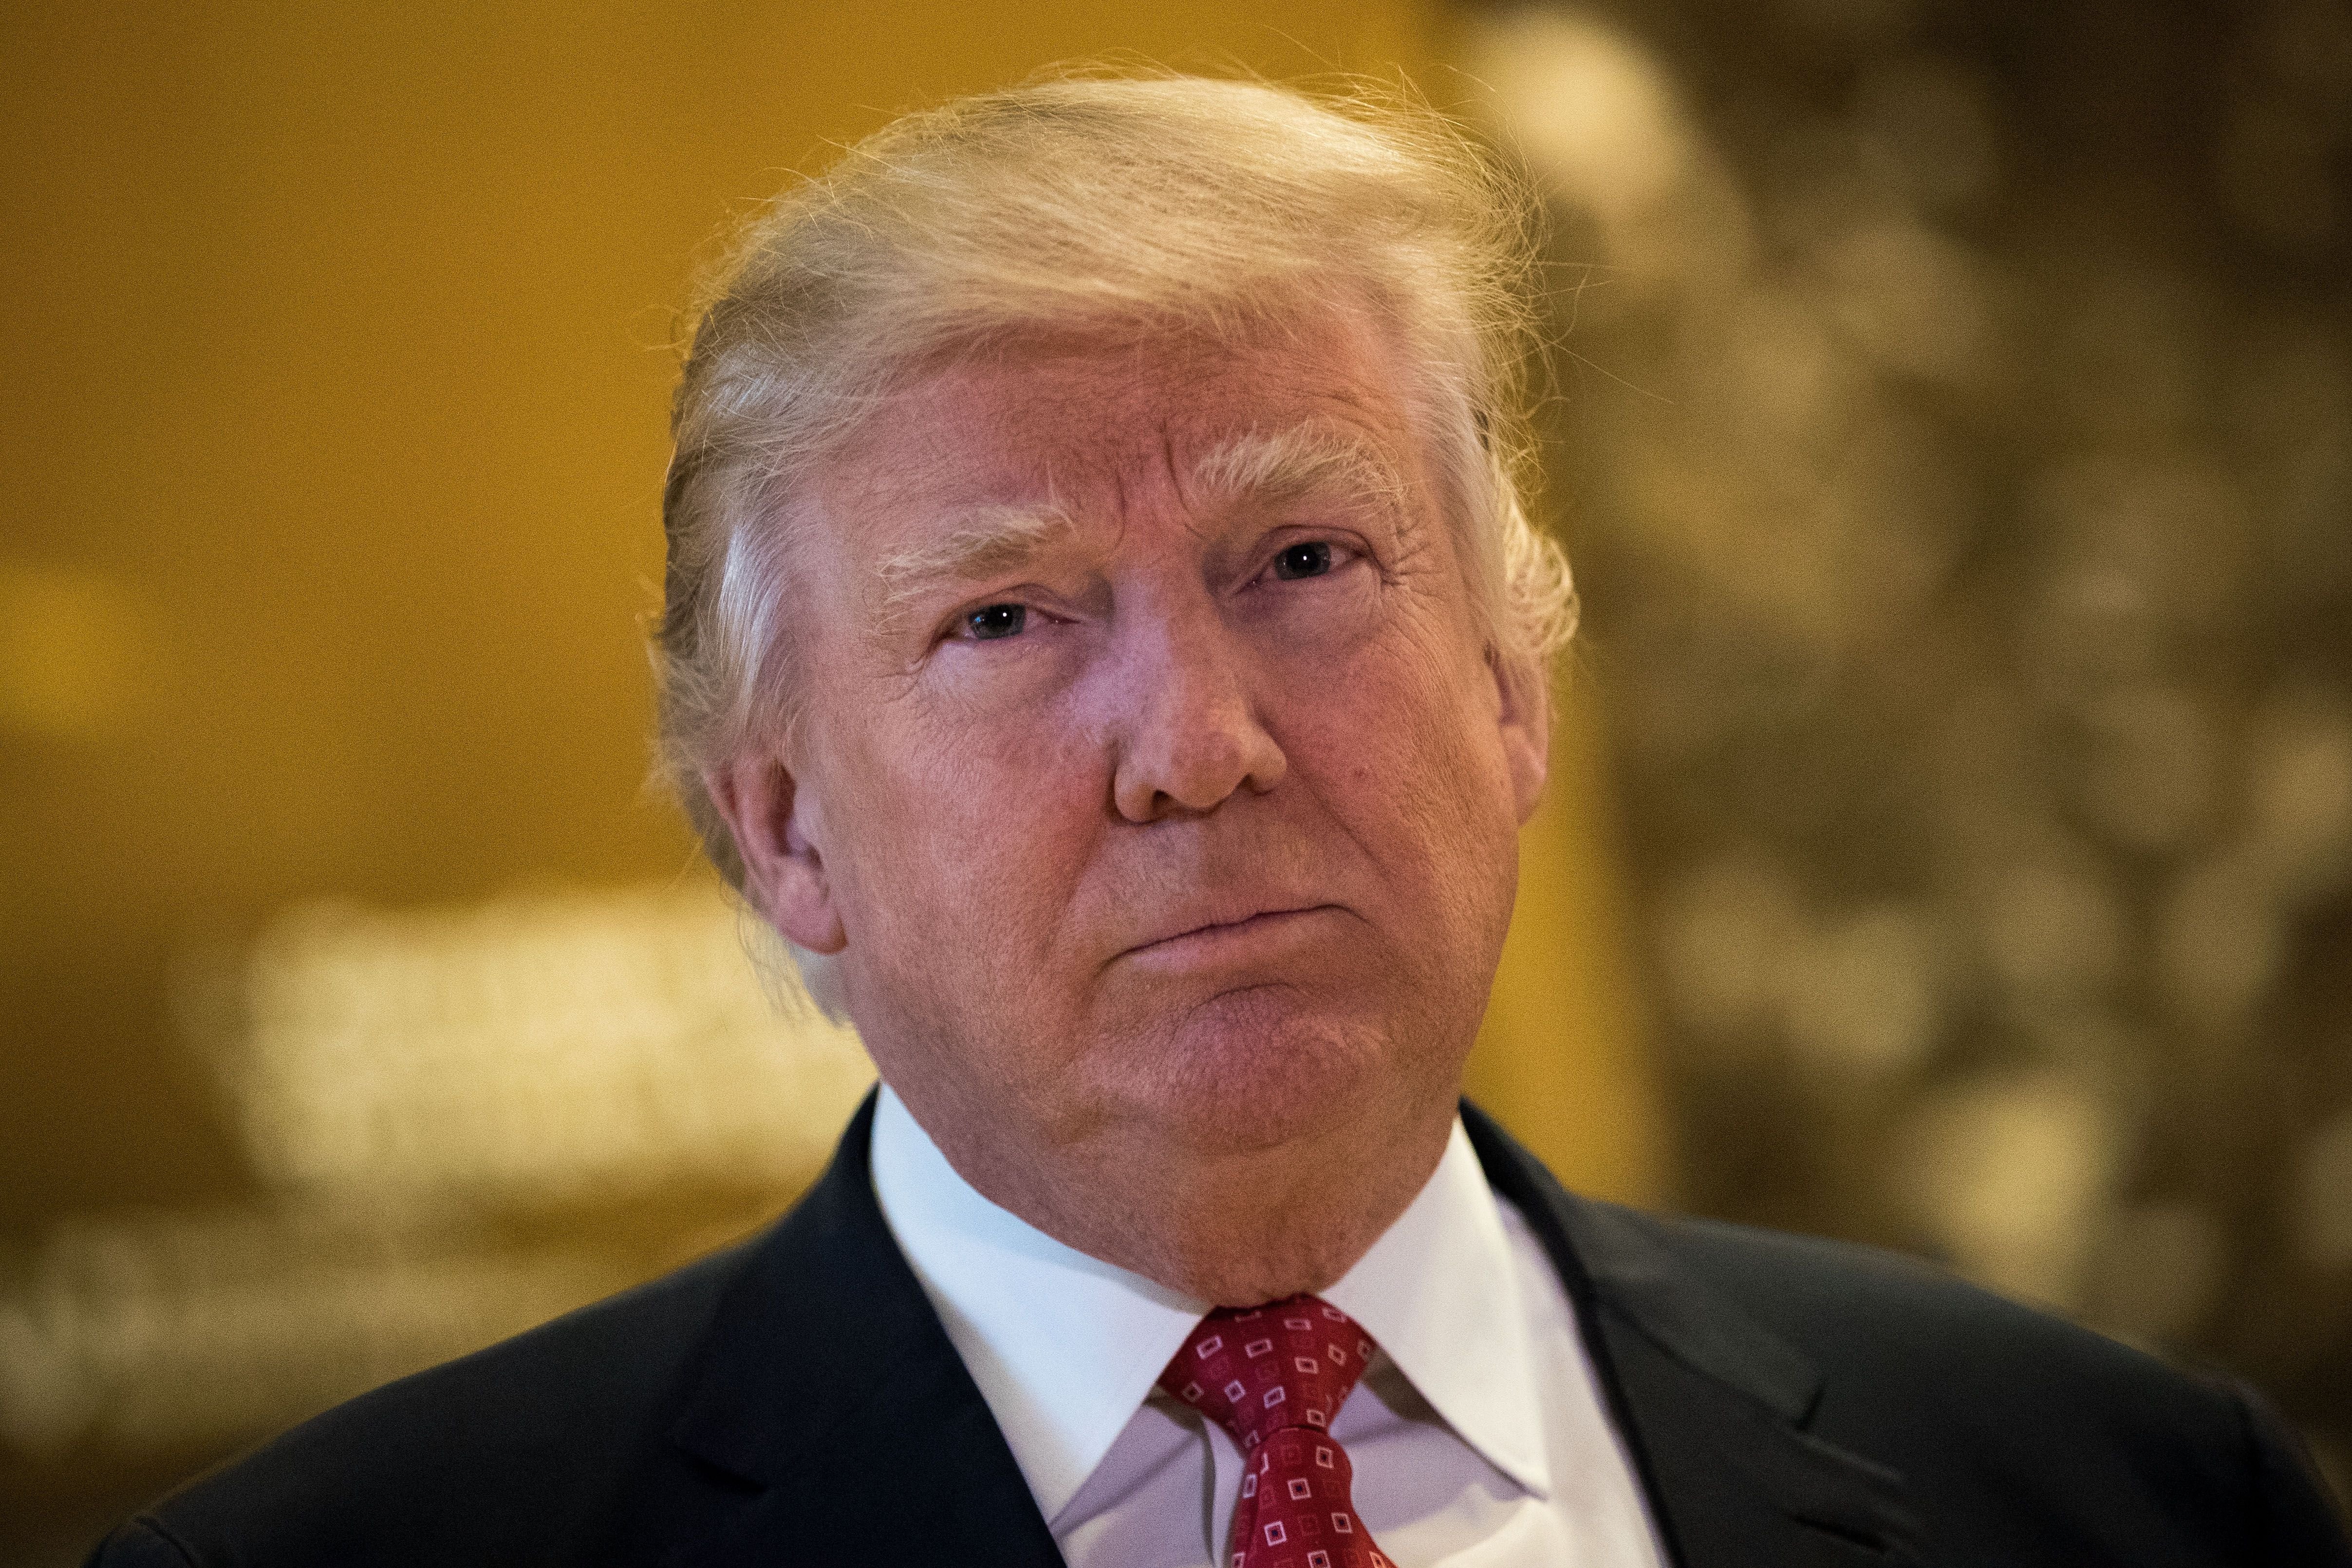 Le président Donald Trump à la Trump Tower, le 9 janvier 2017 à New York. | Photo : Getty Images